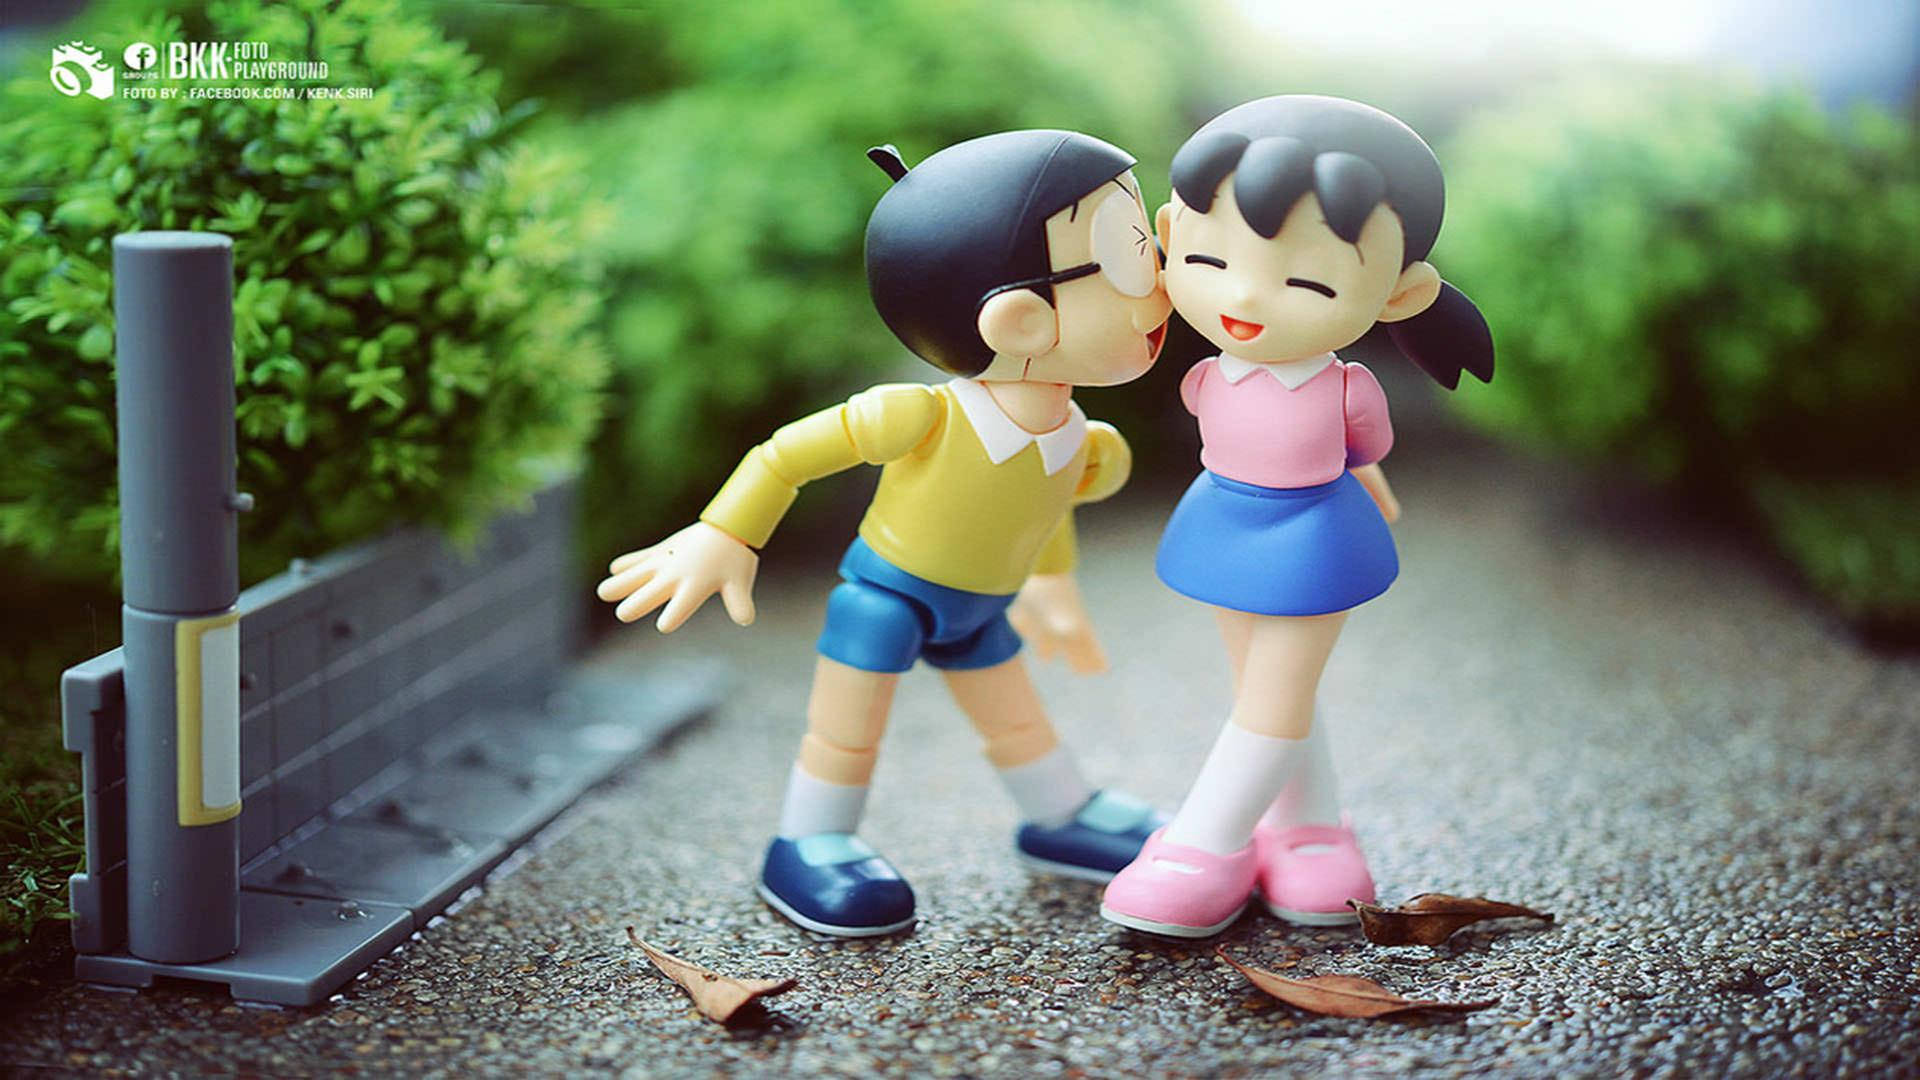 Nobita Shizuka Love Story On Pavement Background